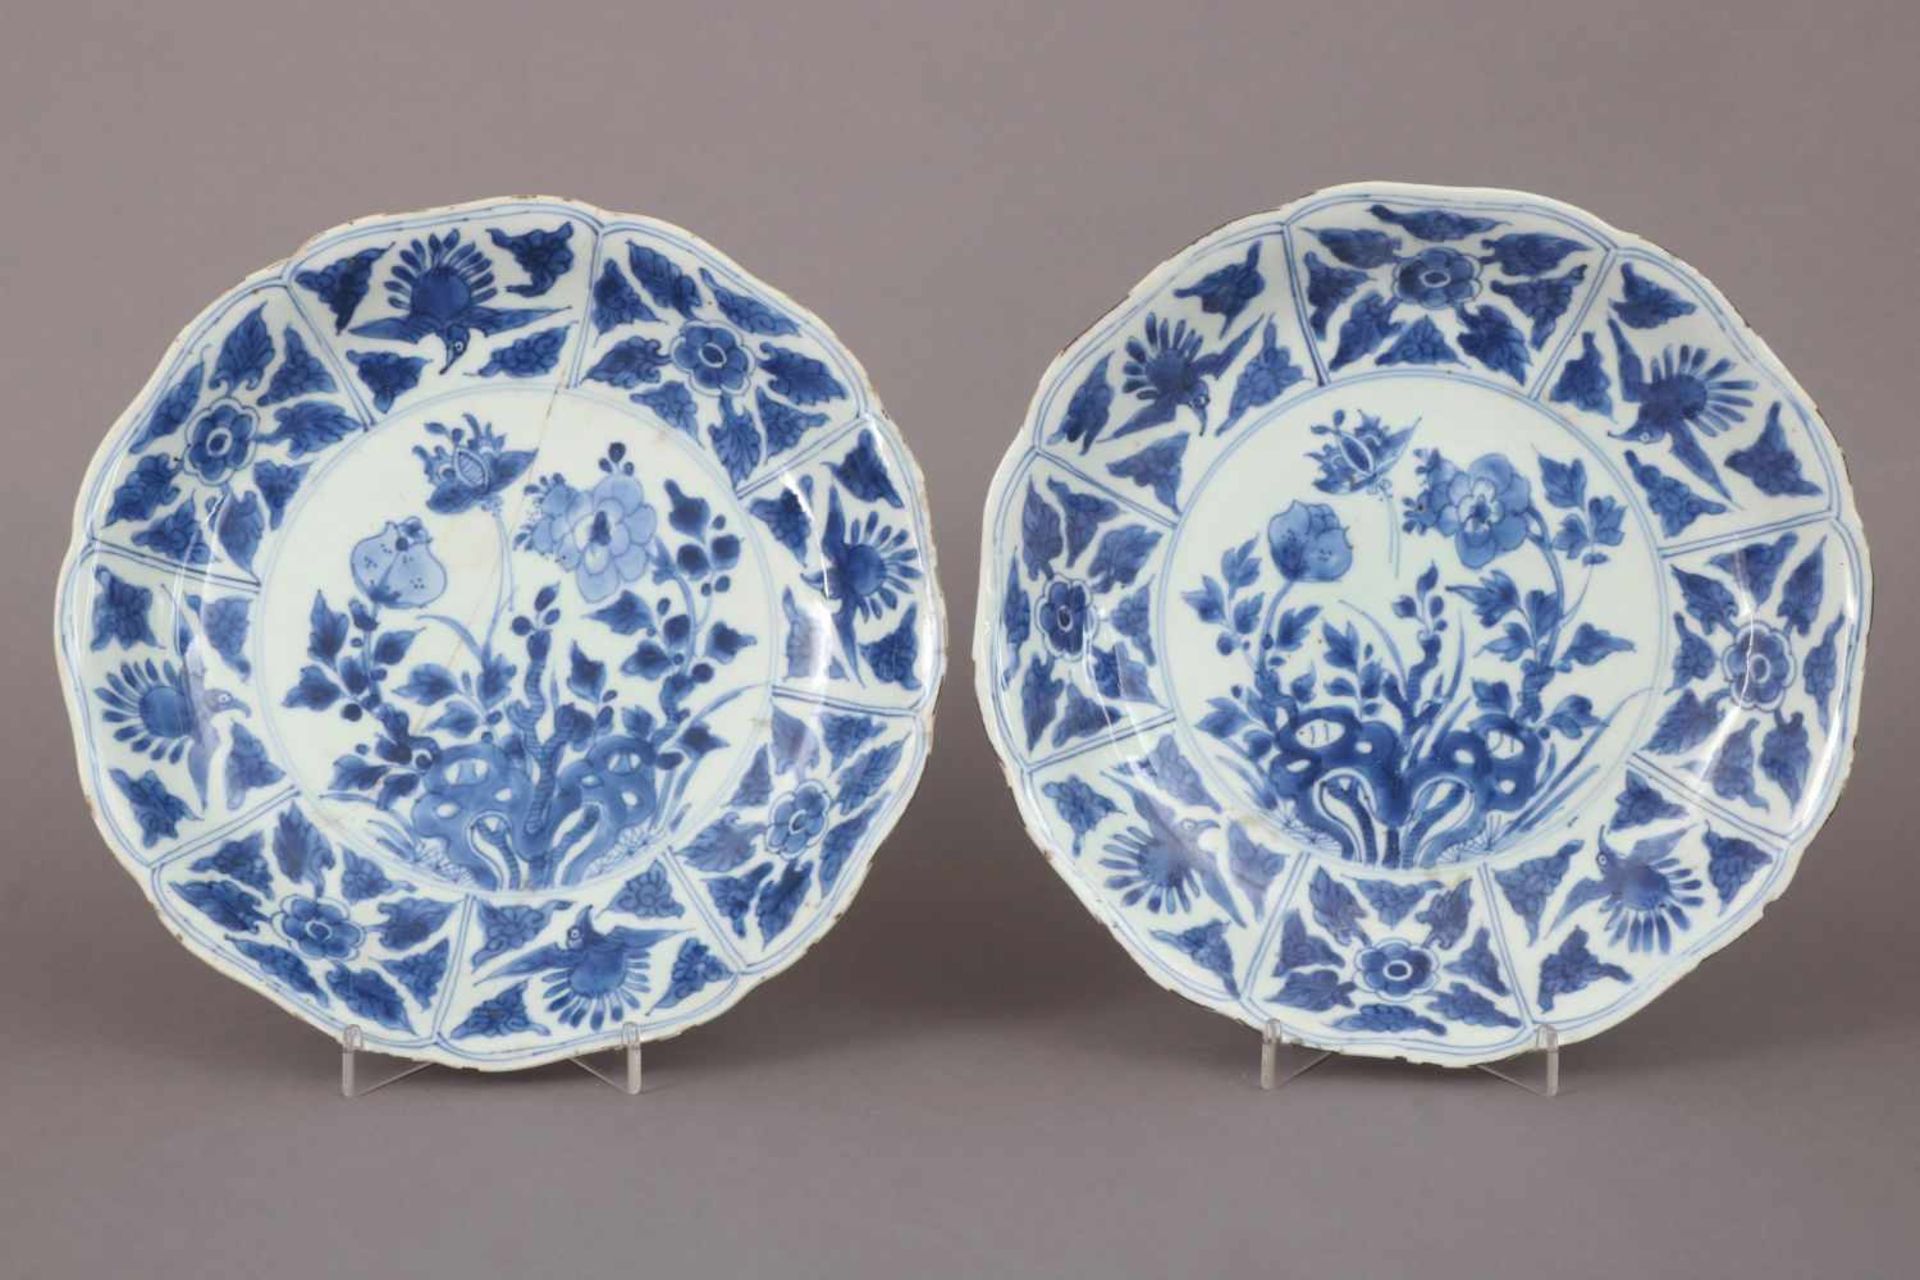 Paar chinesische TellerPorzellan, wohl 18. Jhdt., Blaumalerei, passige, leicht vertiefte Teller - Bild 2 aus 6